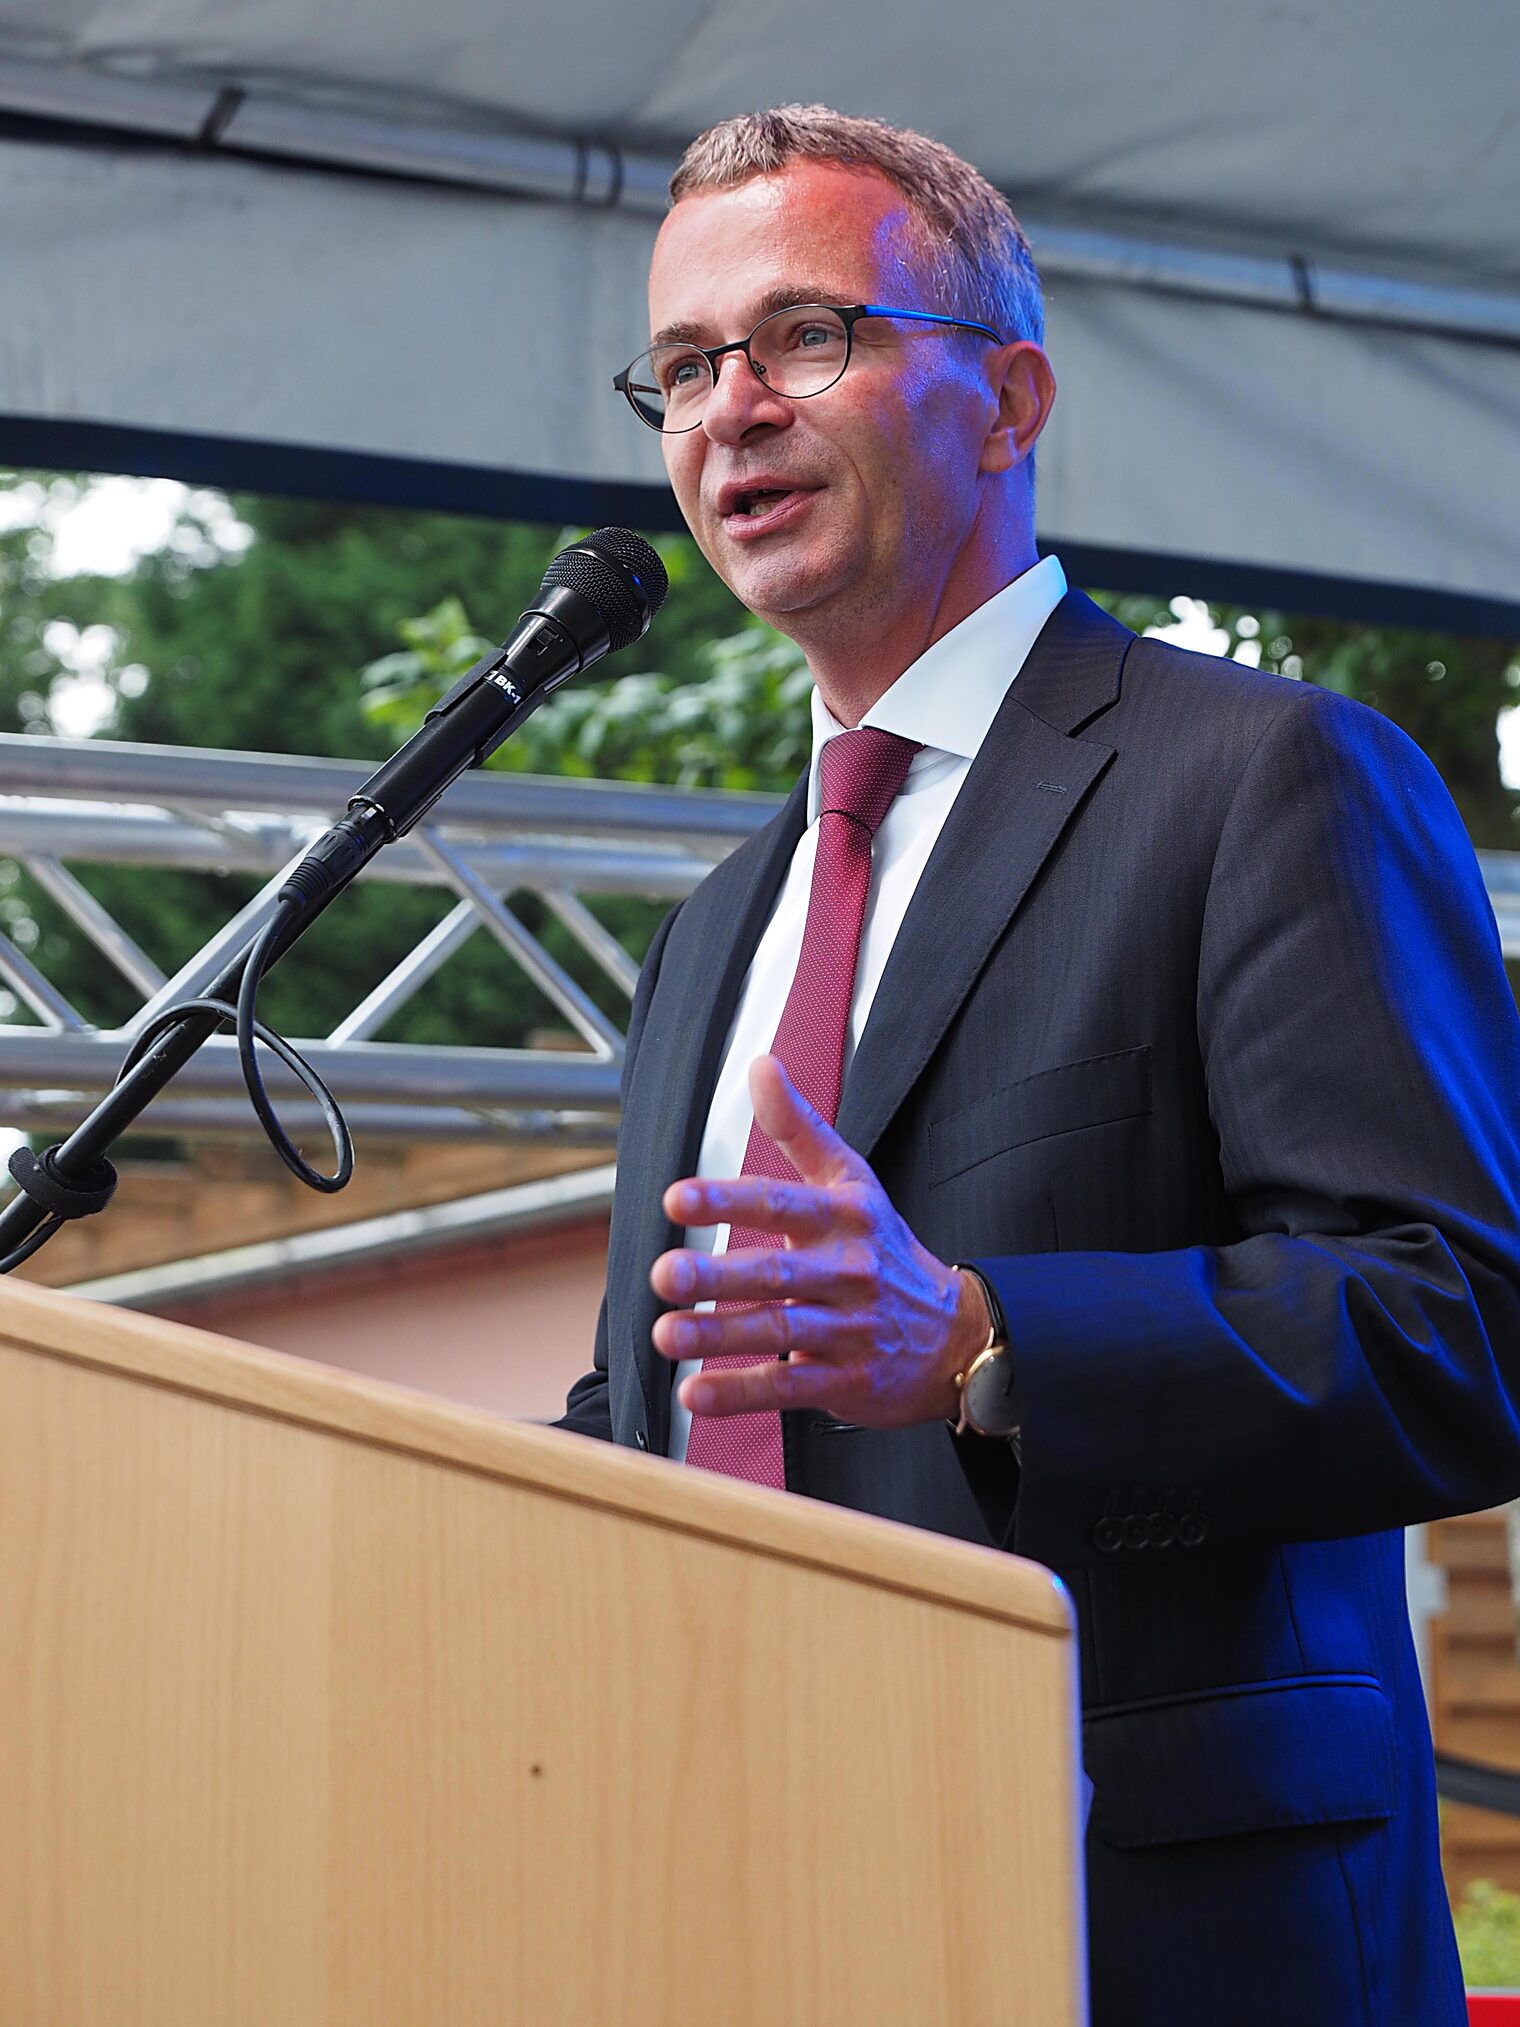 Statement von Albrecht Gerber, Wirtschaftsminister des Landes Brandenburg